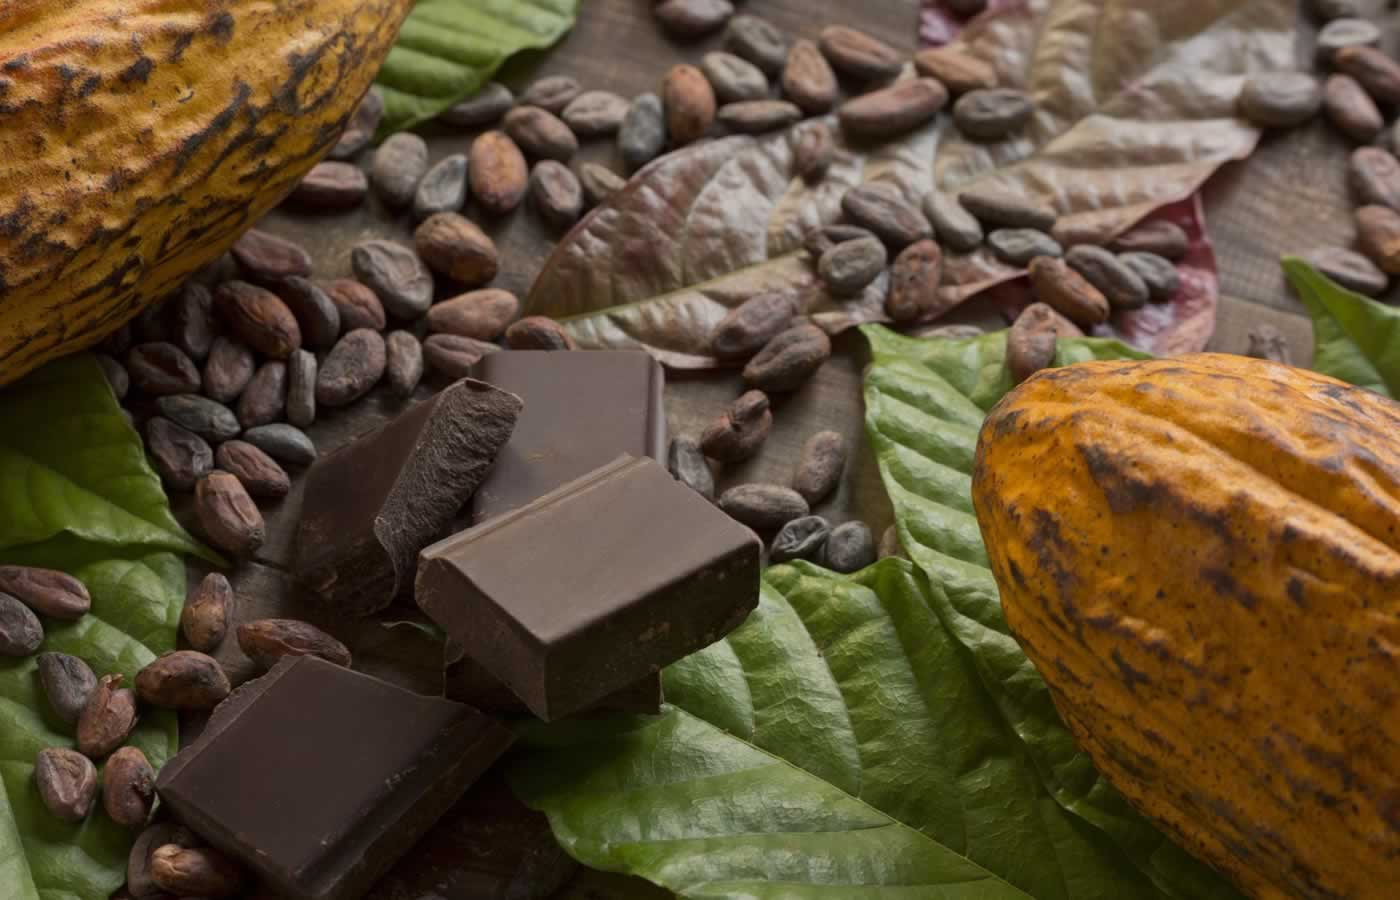 Όλοι αγαπούν τη σοκολάτα…αλλά οι περισσότεροι δεν έχουν ιδέα και δεν ξέρουν από πού προέρχεται αυτή η γευστική απόλαυση που τρελαίνει